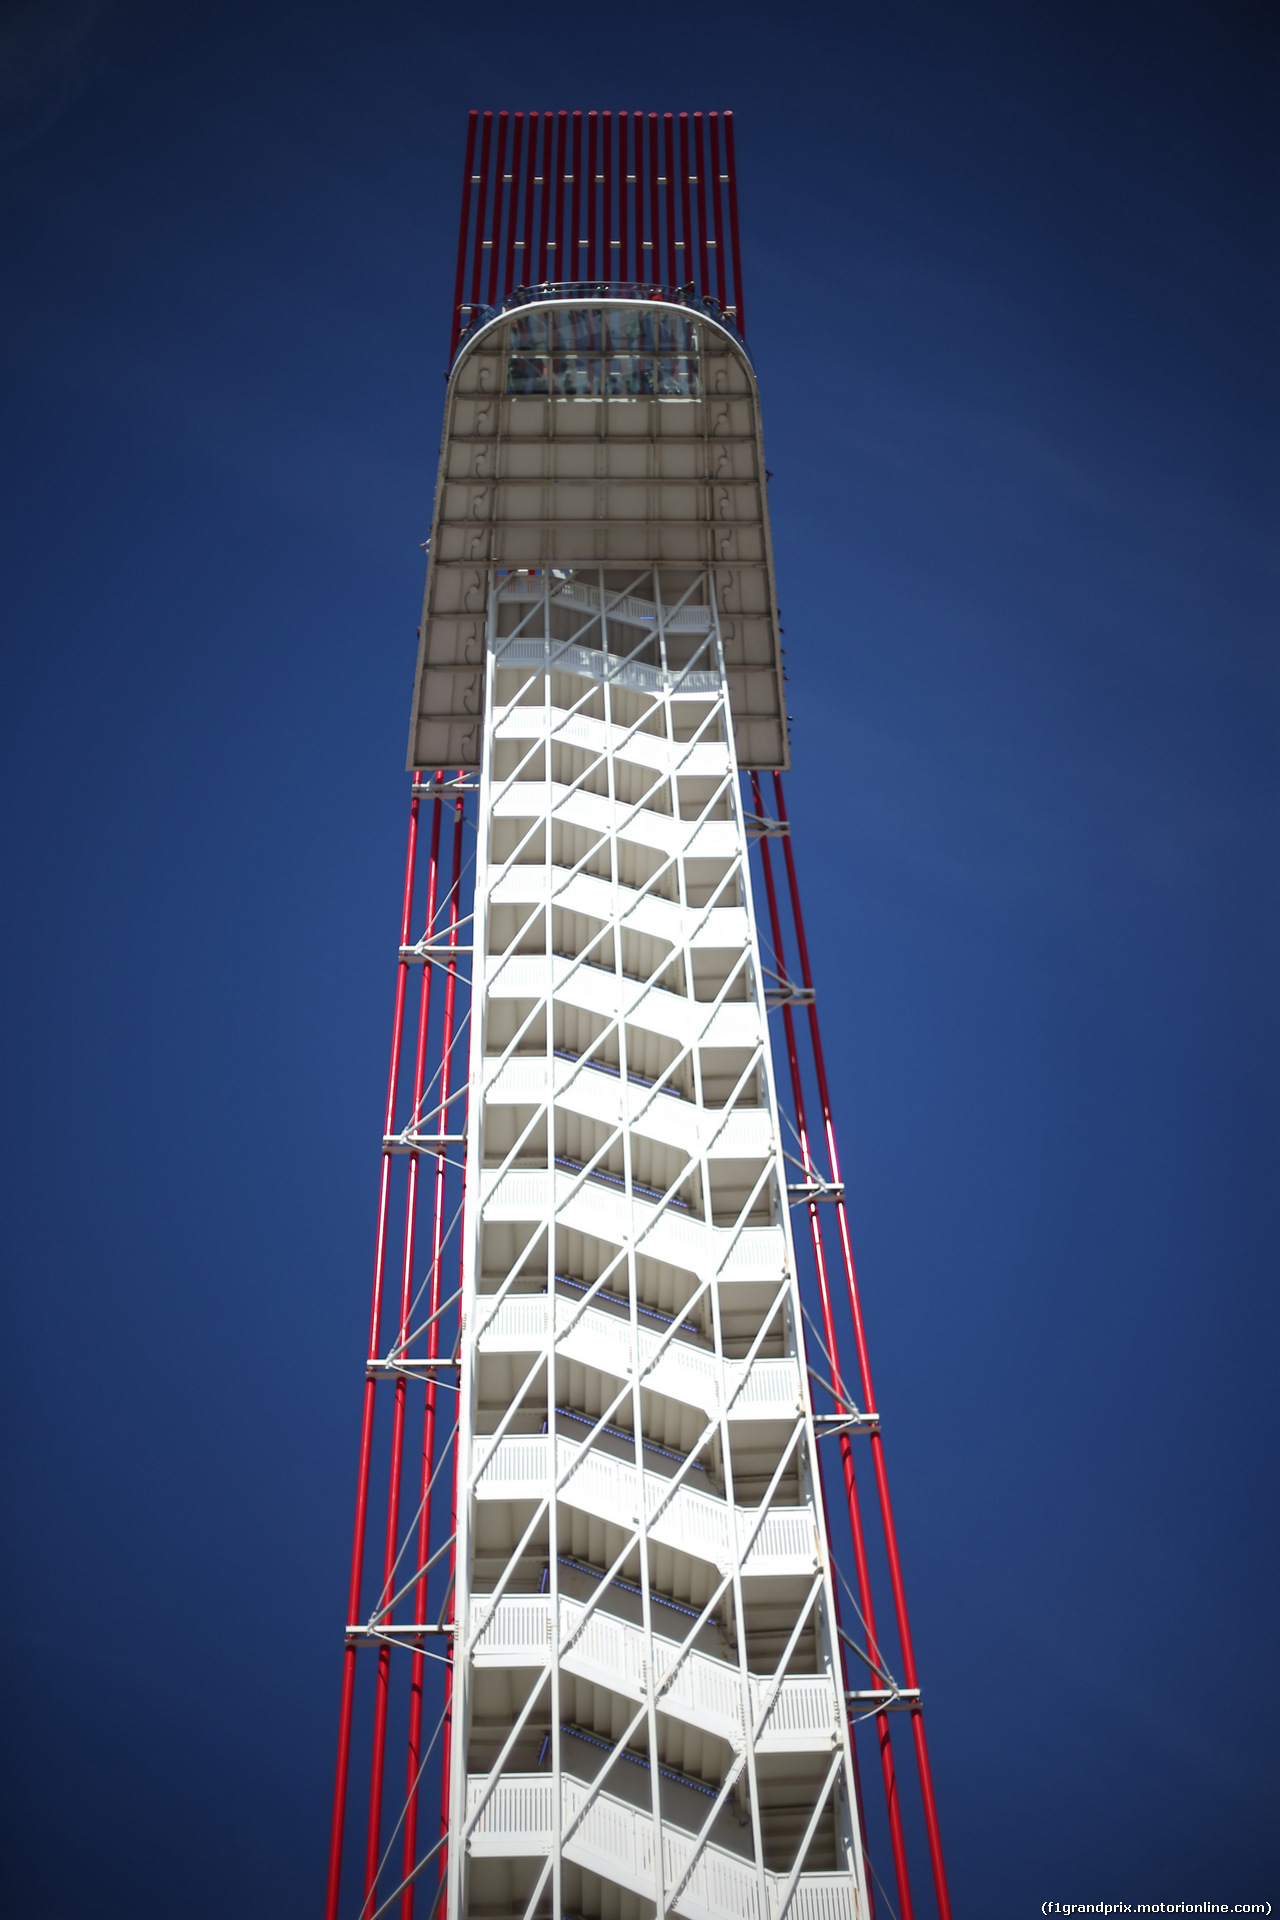 GP USA, 02.11.2019- The COTA tower